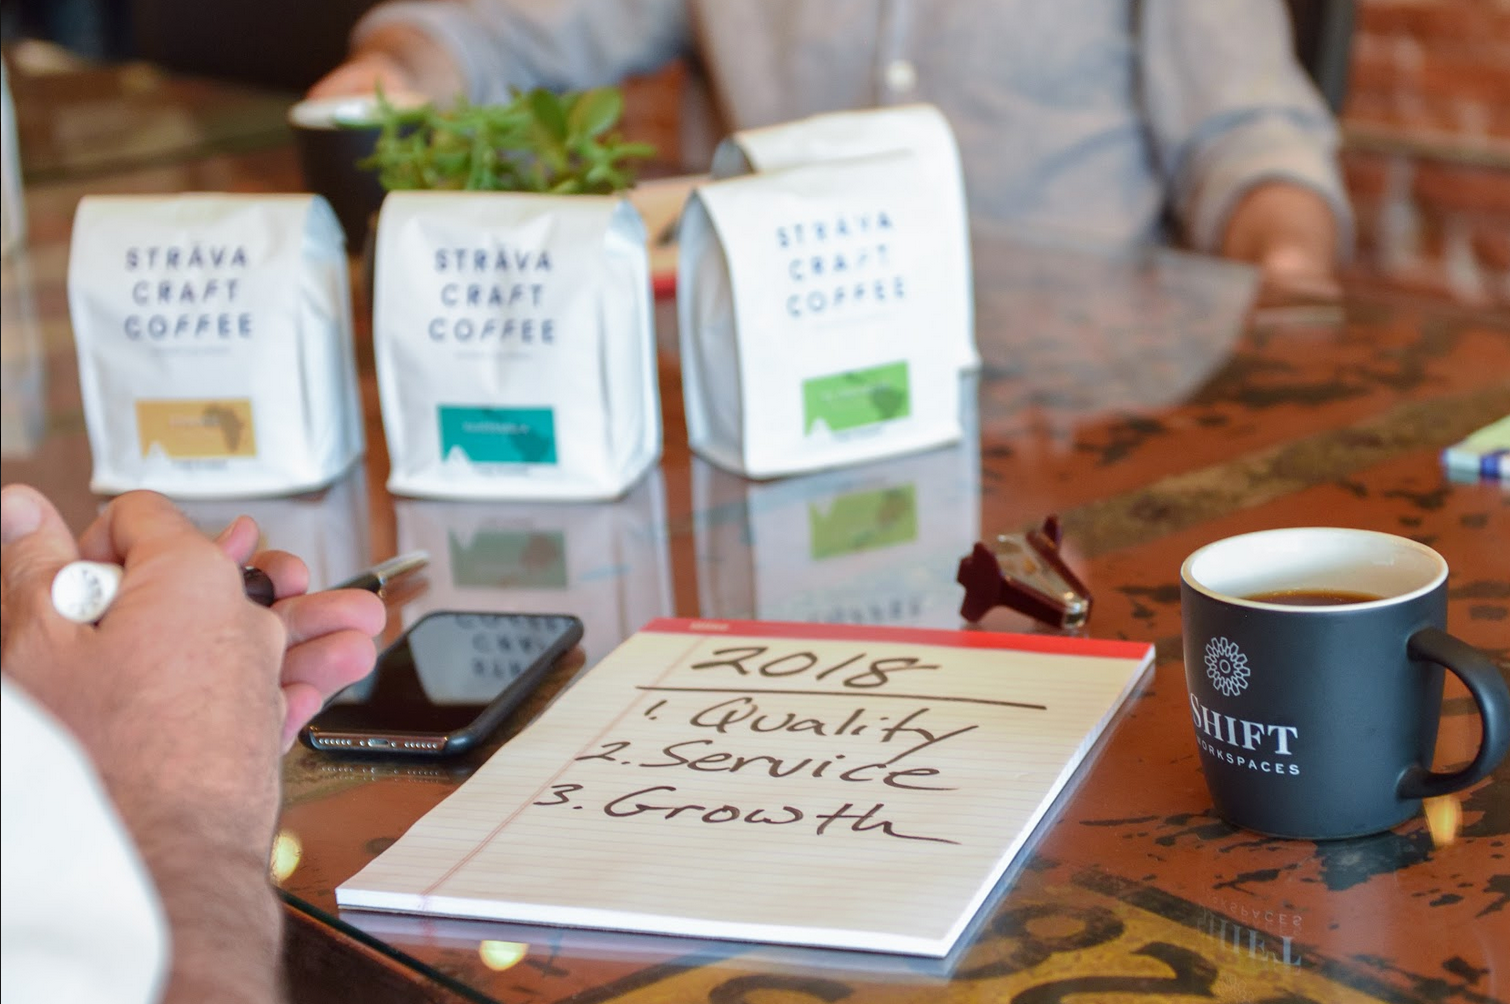 Sträva Craft Coffee - A Denver Westword Review